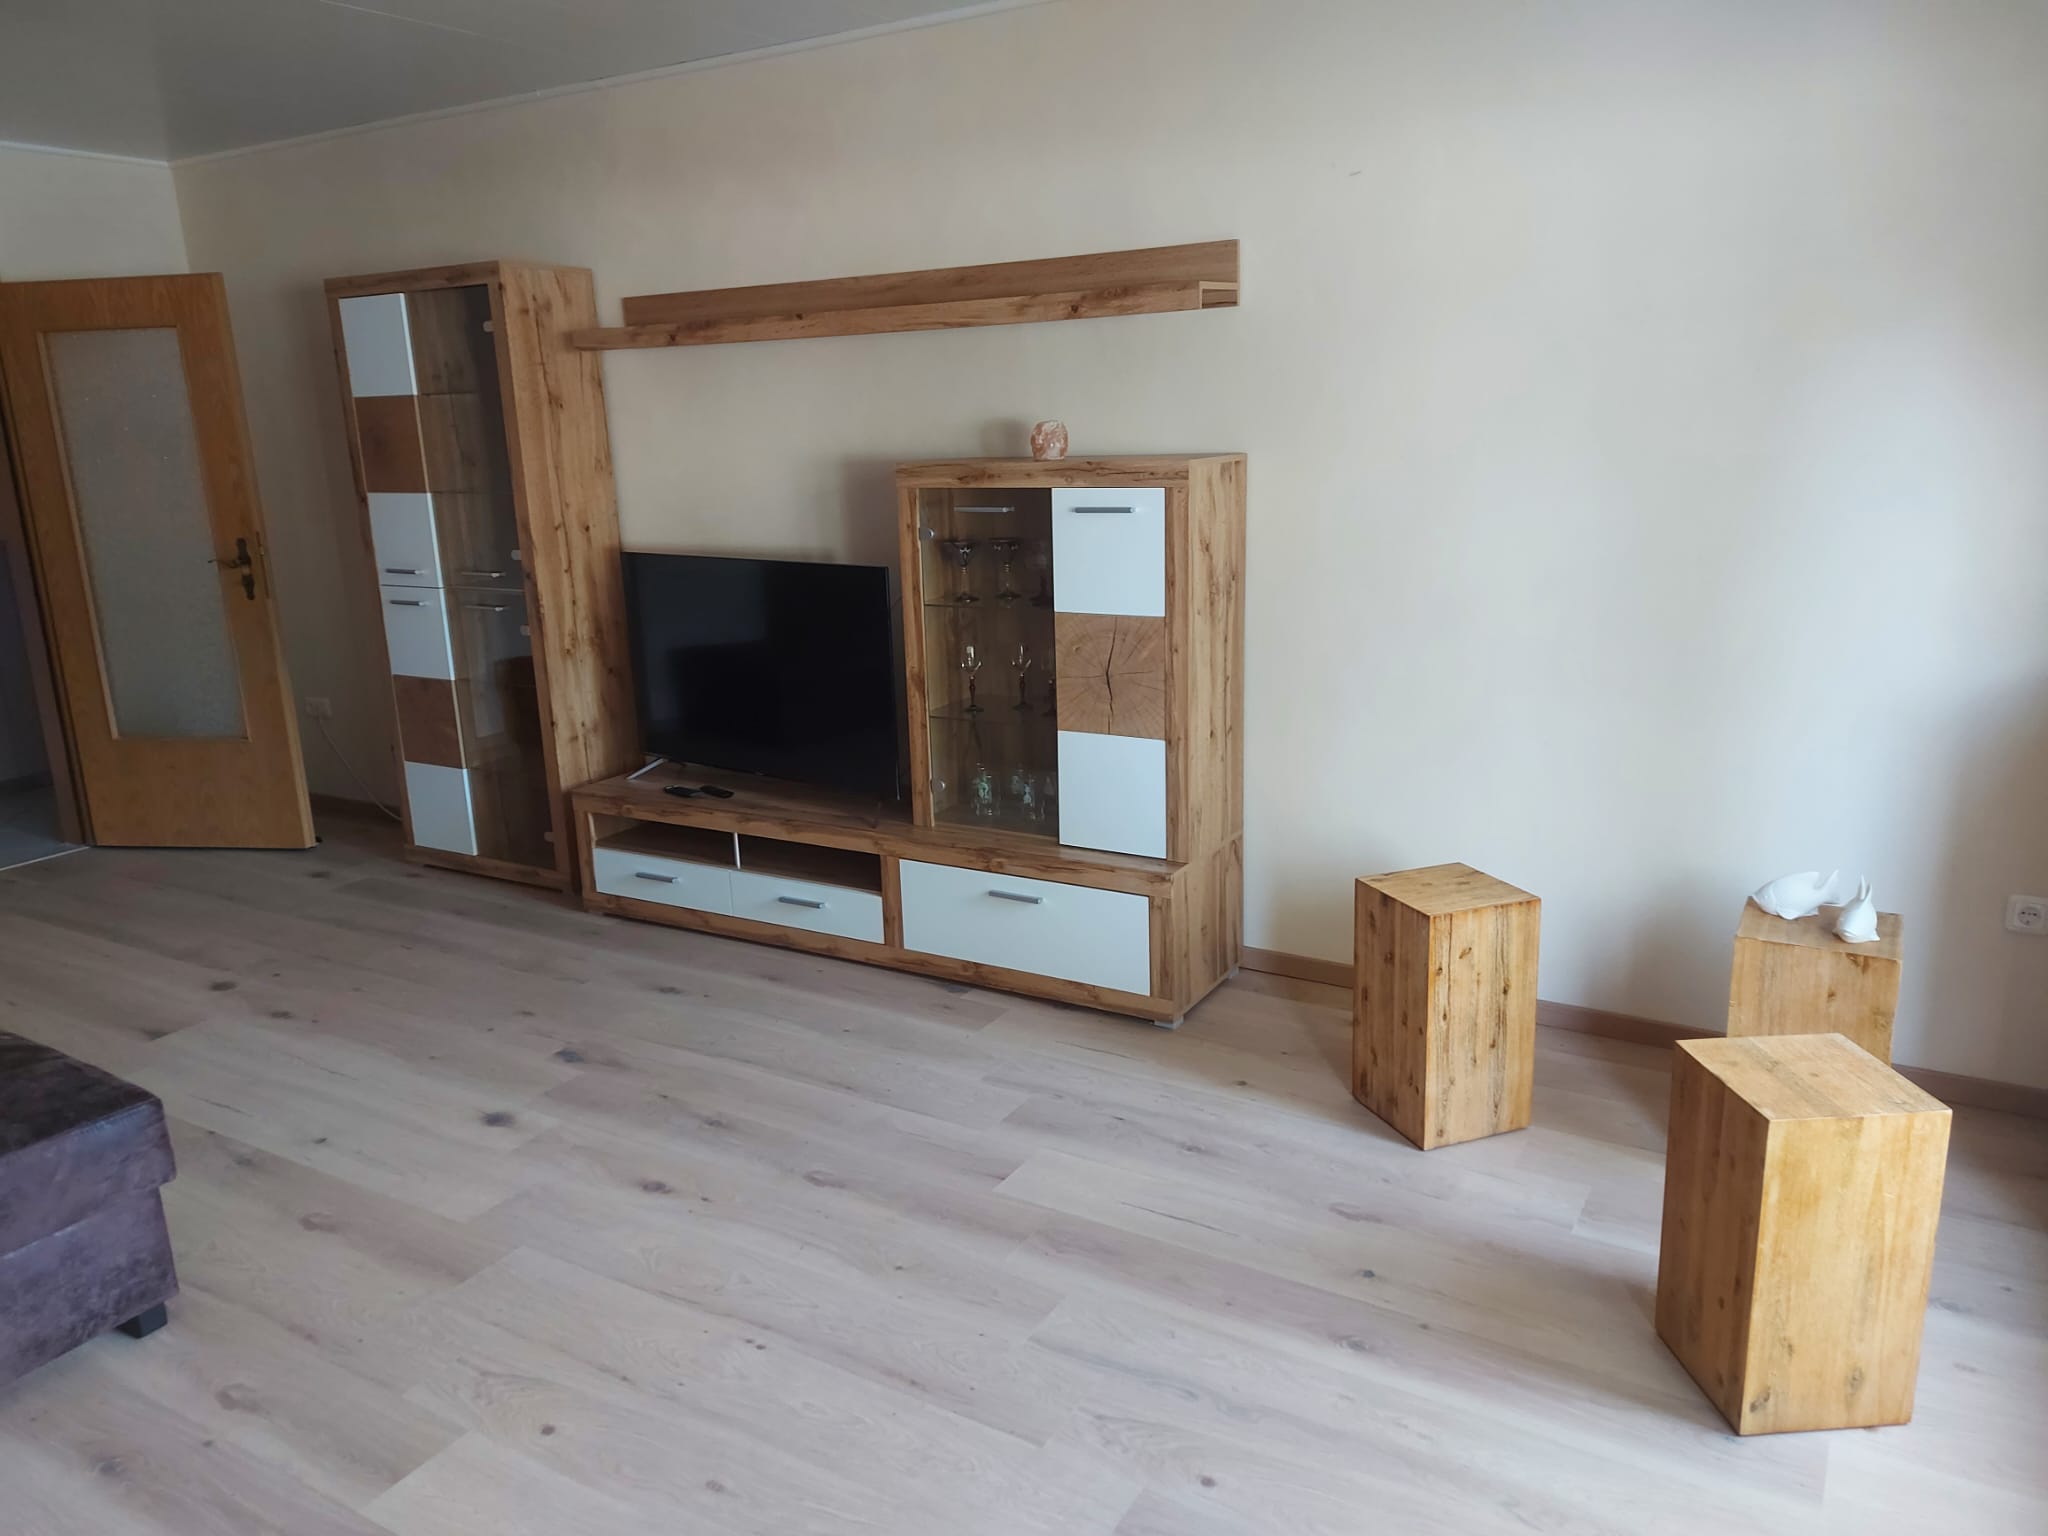 Wohnzimmer weitere Schlafmöglichkeiten in der Ferienwohnung 4k OLED Fernseher TV